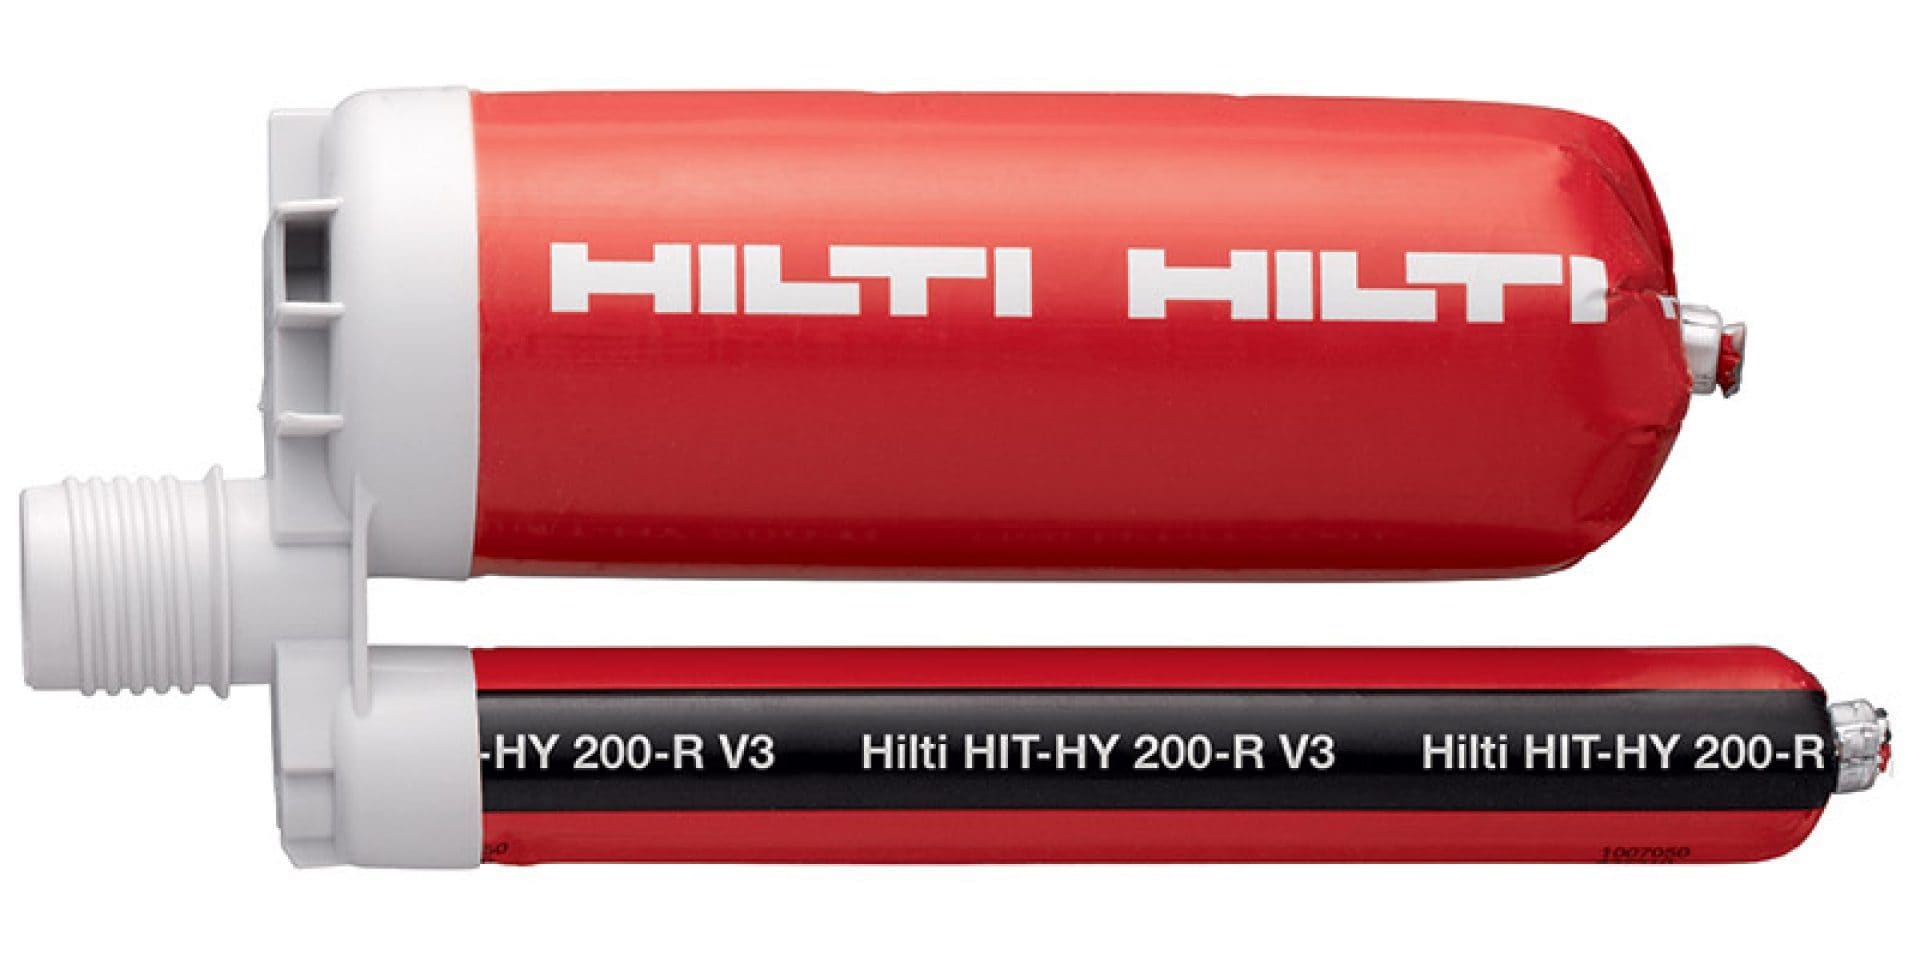 HIT-HY 200-R mortar